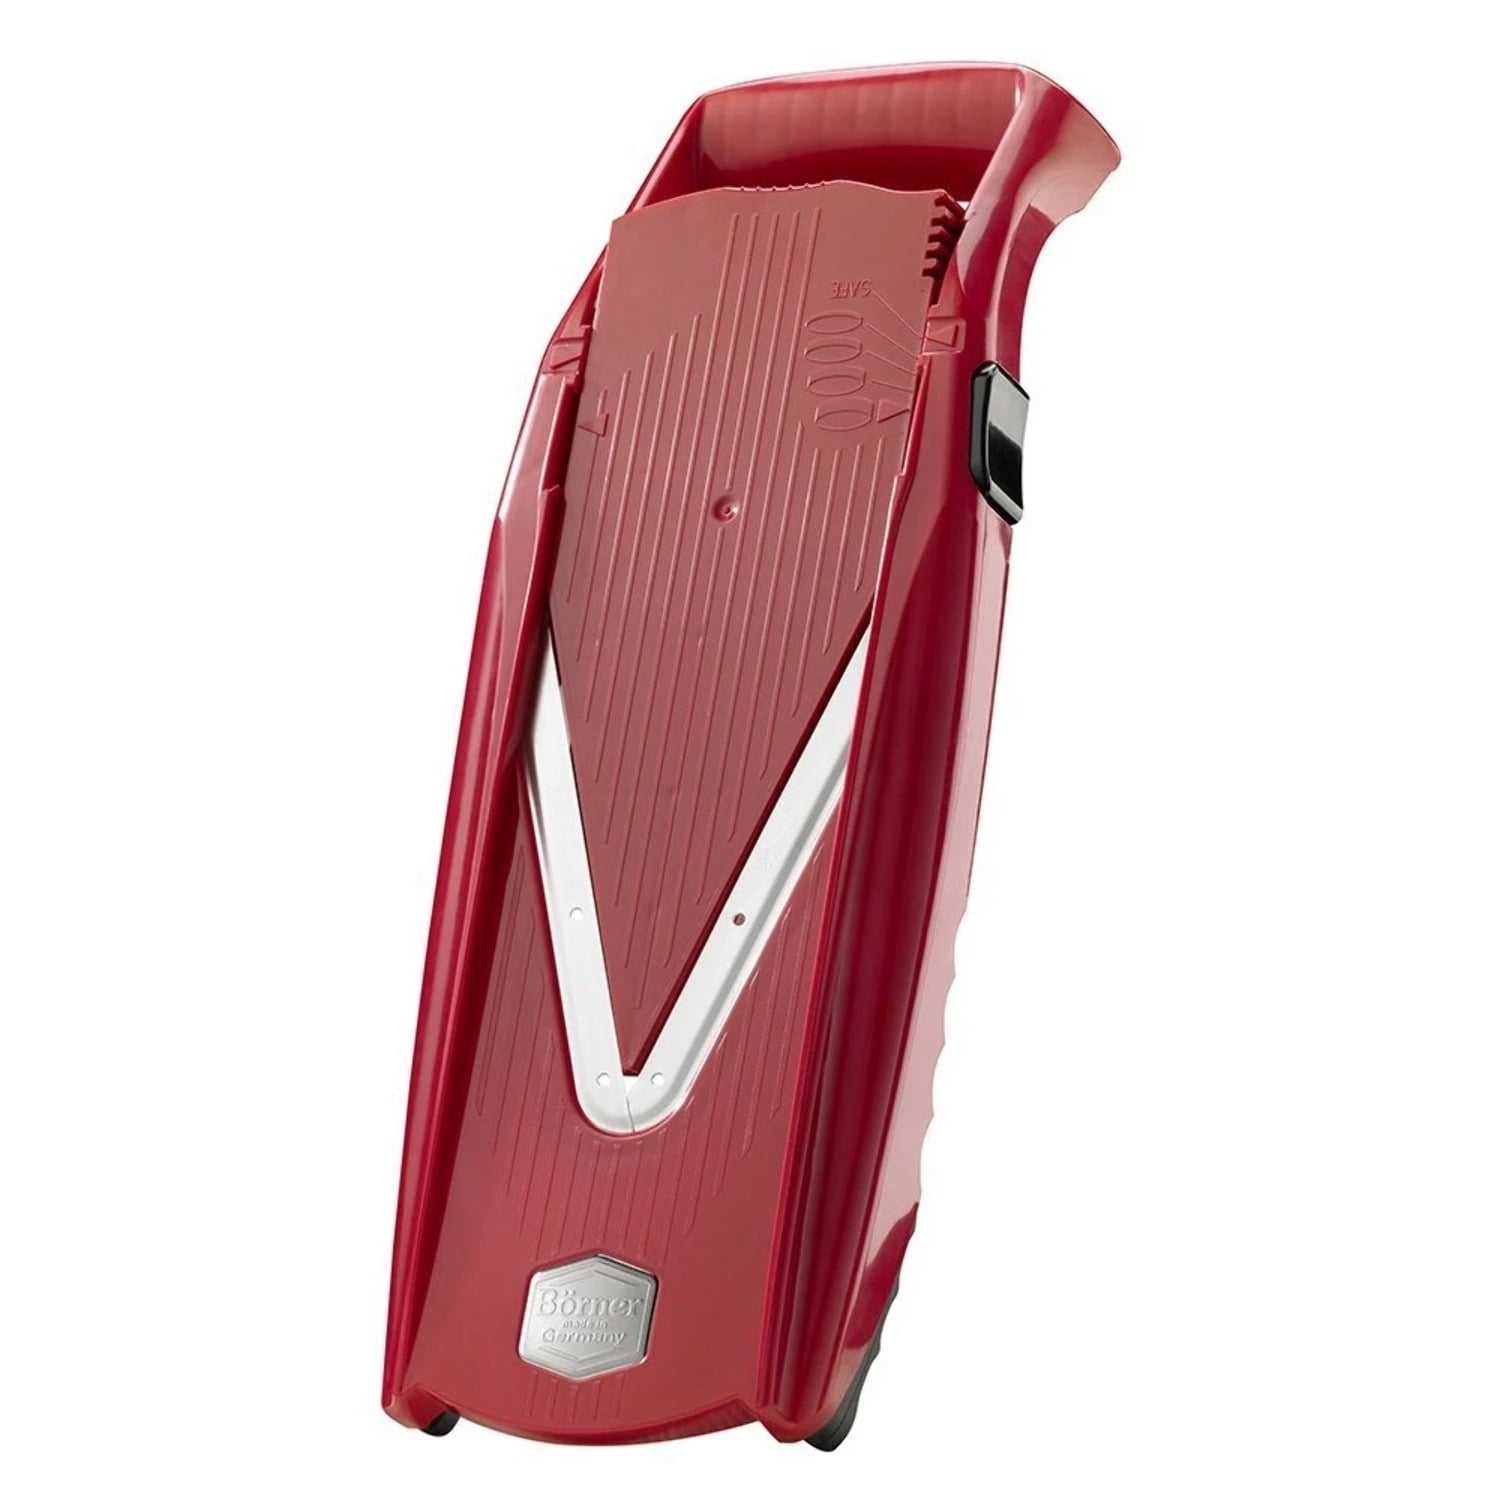 Börner V6 ExclusiveLine Mandoline Professional Set (8 pcs.) • Vegetable  Slicer (V-Slicer) + Inserts + Safety Guard + Accessories • Cut 7 Ways •